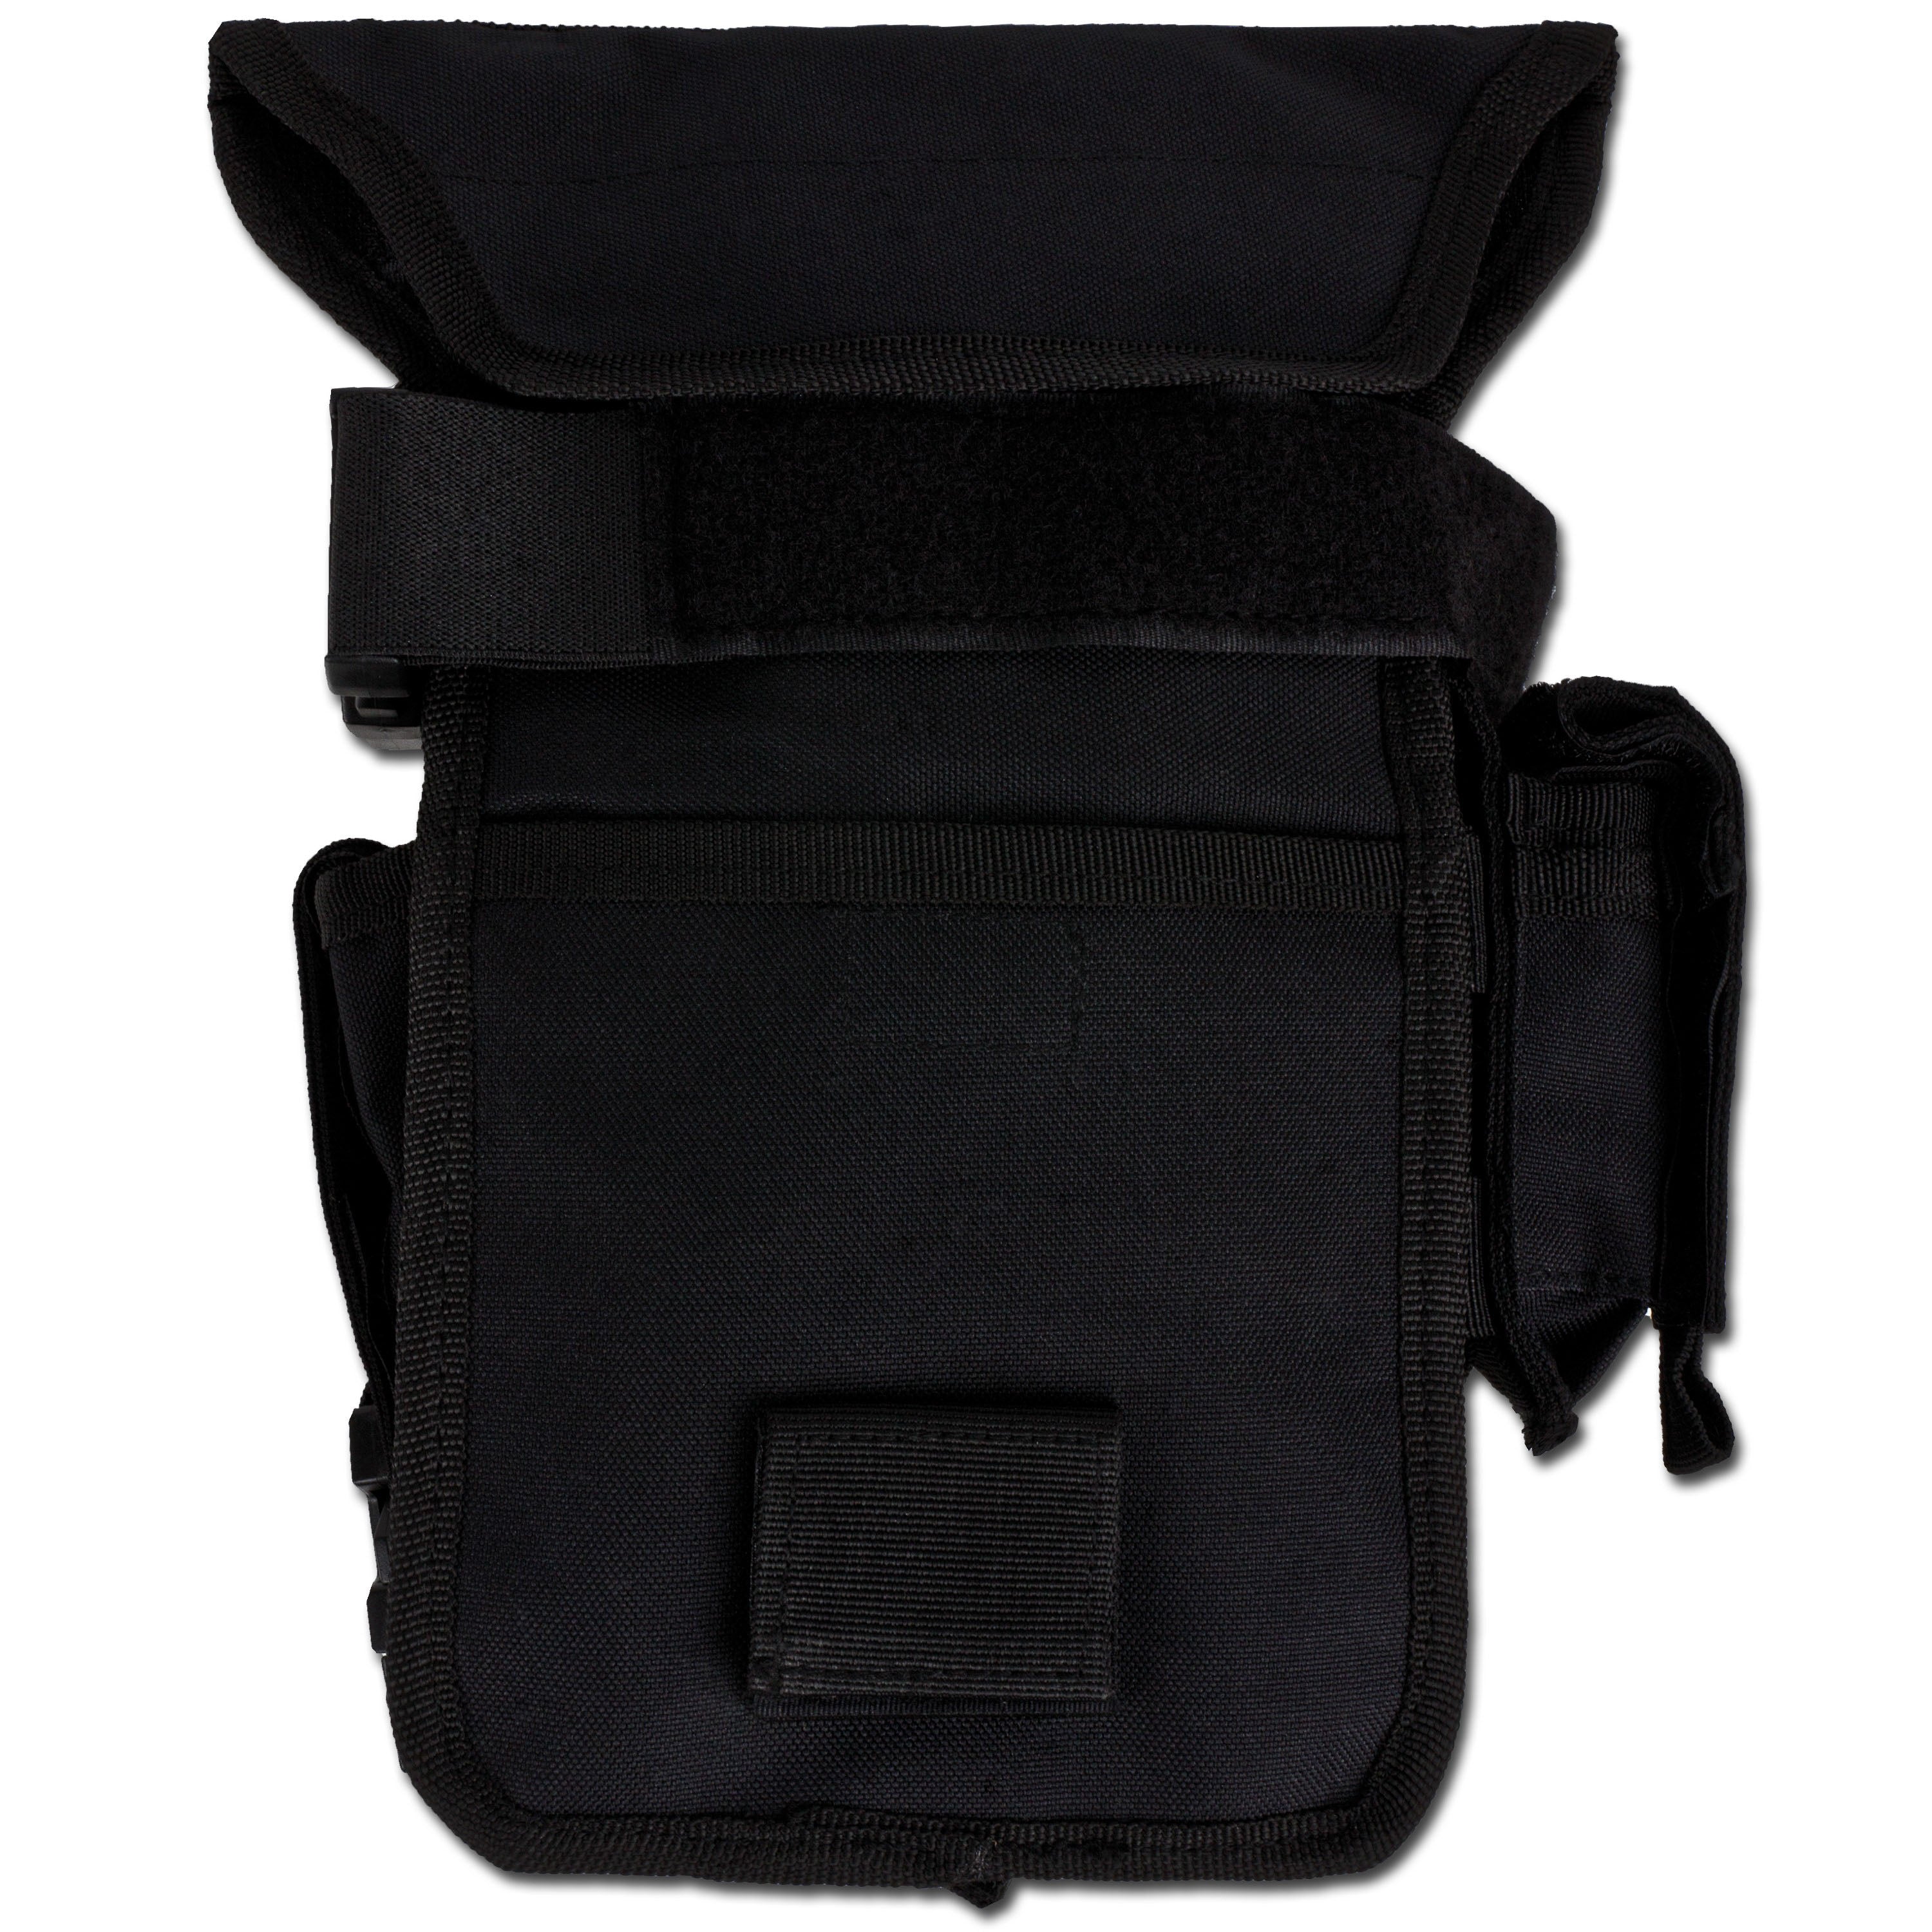 Hüfttasche mit Bein- und Gürtelbefestigung SECURITY schwarz